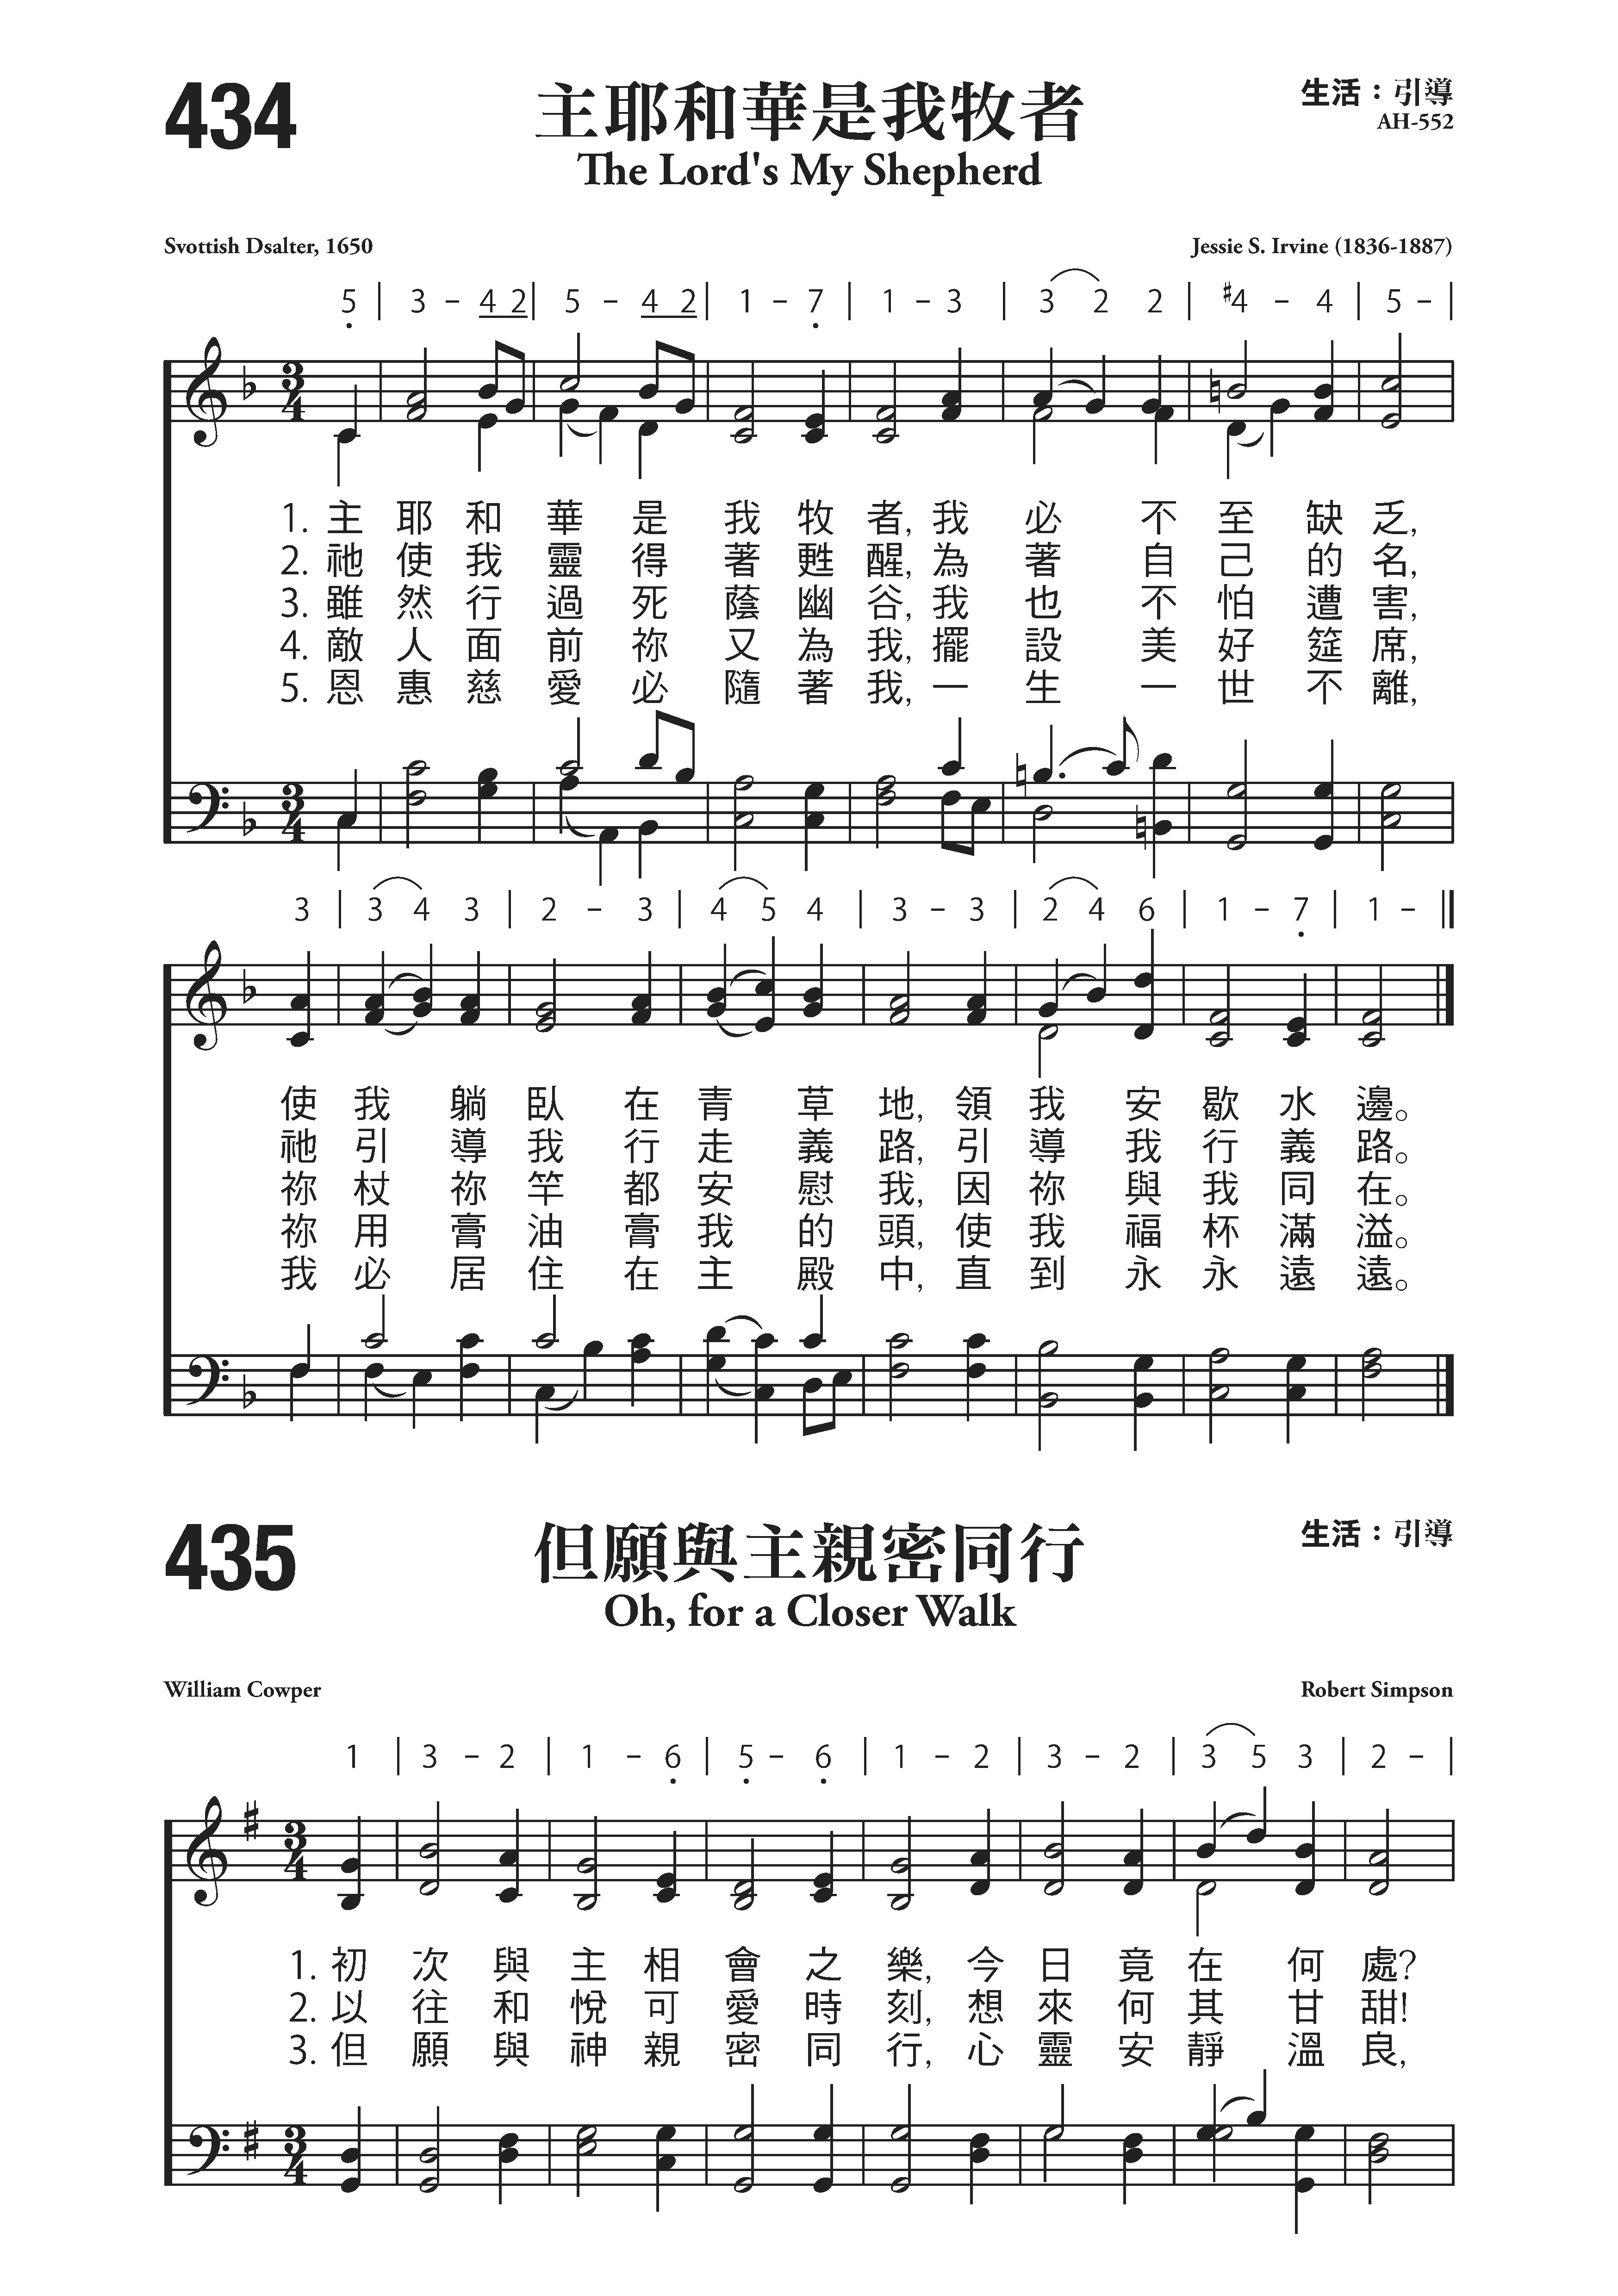 ★ 诗歌-耶和华祢是我的牧者 琴谱/五线谱pdf-香港流行钢琴协会琴谱下载 ★